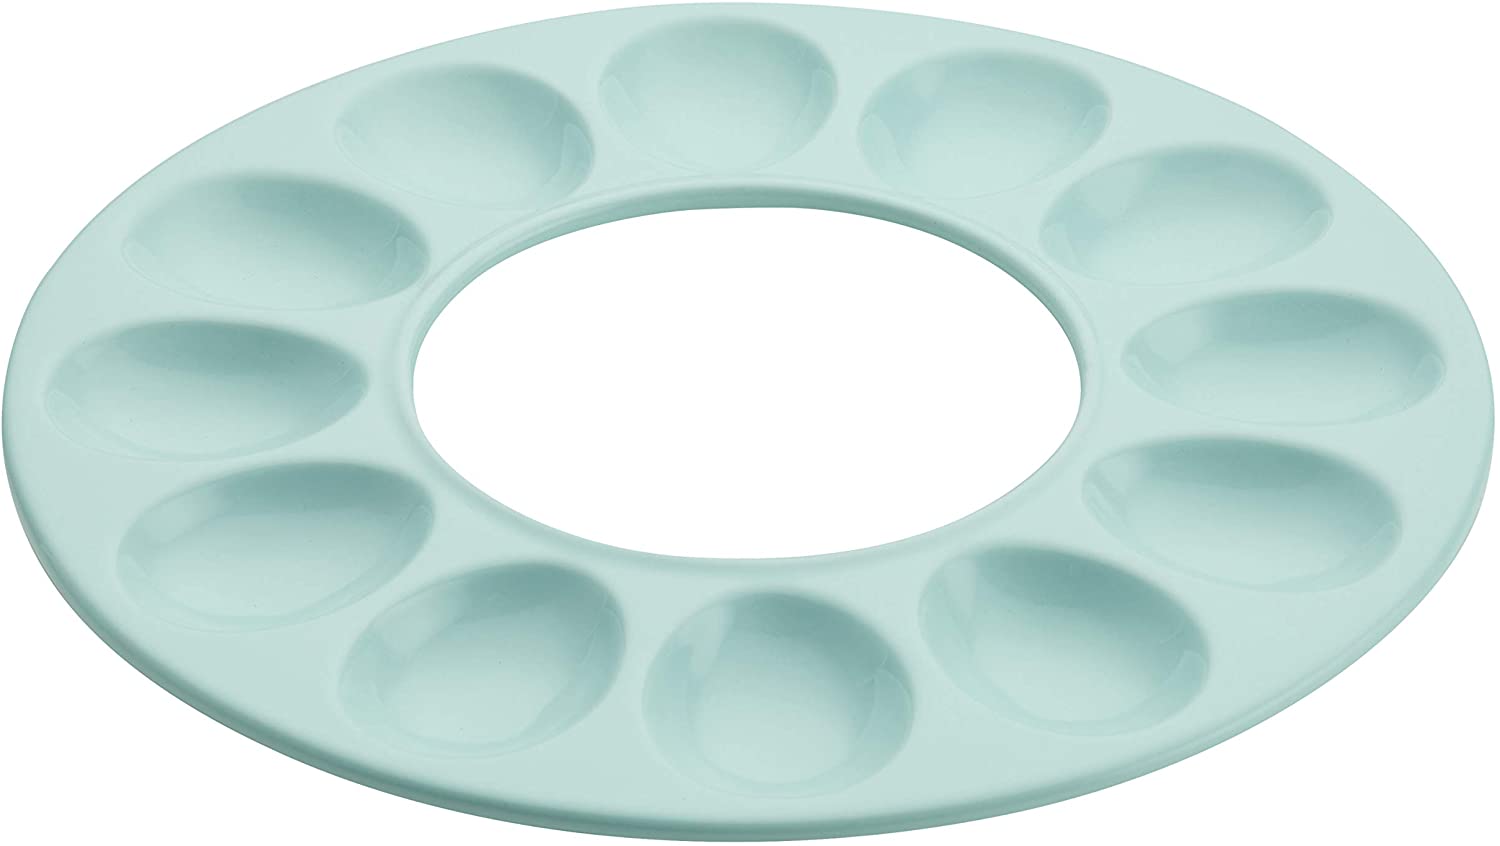 Rachael Ray Solid Glaze Ceramics Egg Tray